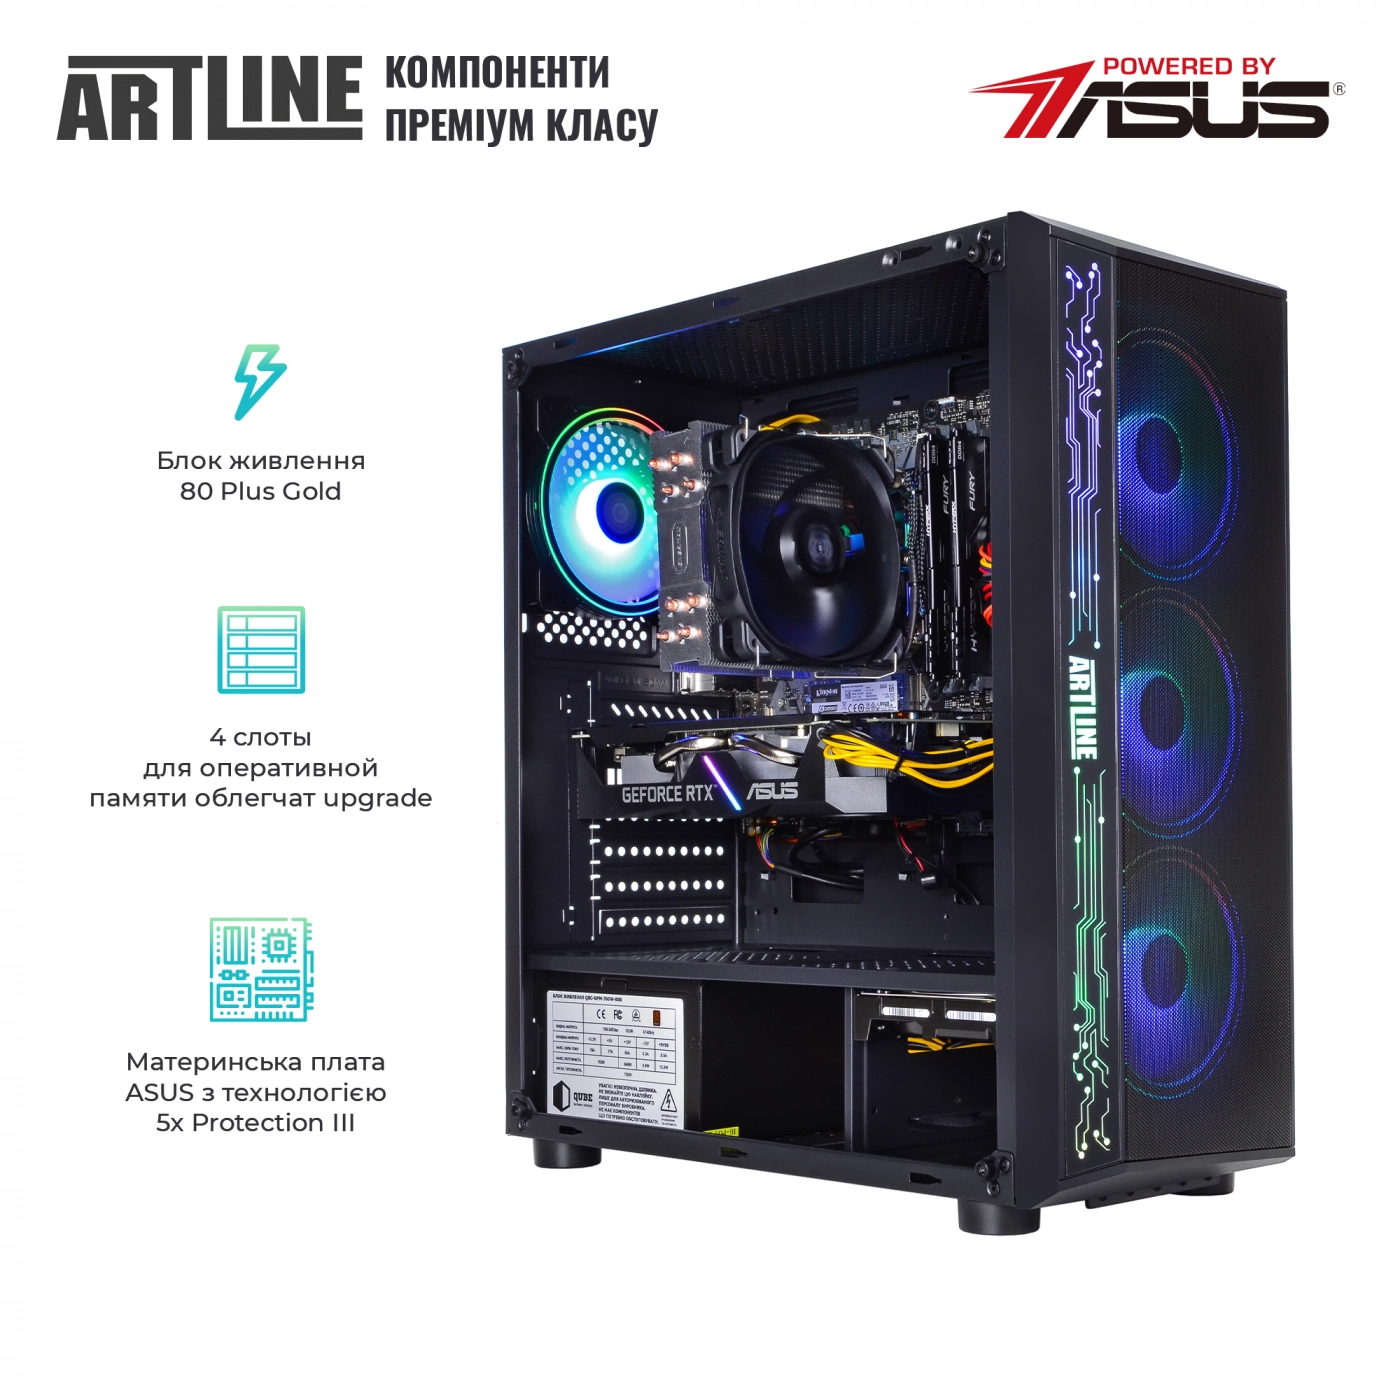 Купить Компьютер ARTLINE Gaming X85v03 - фото 2